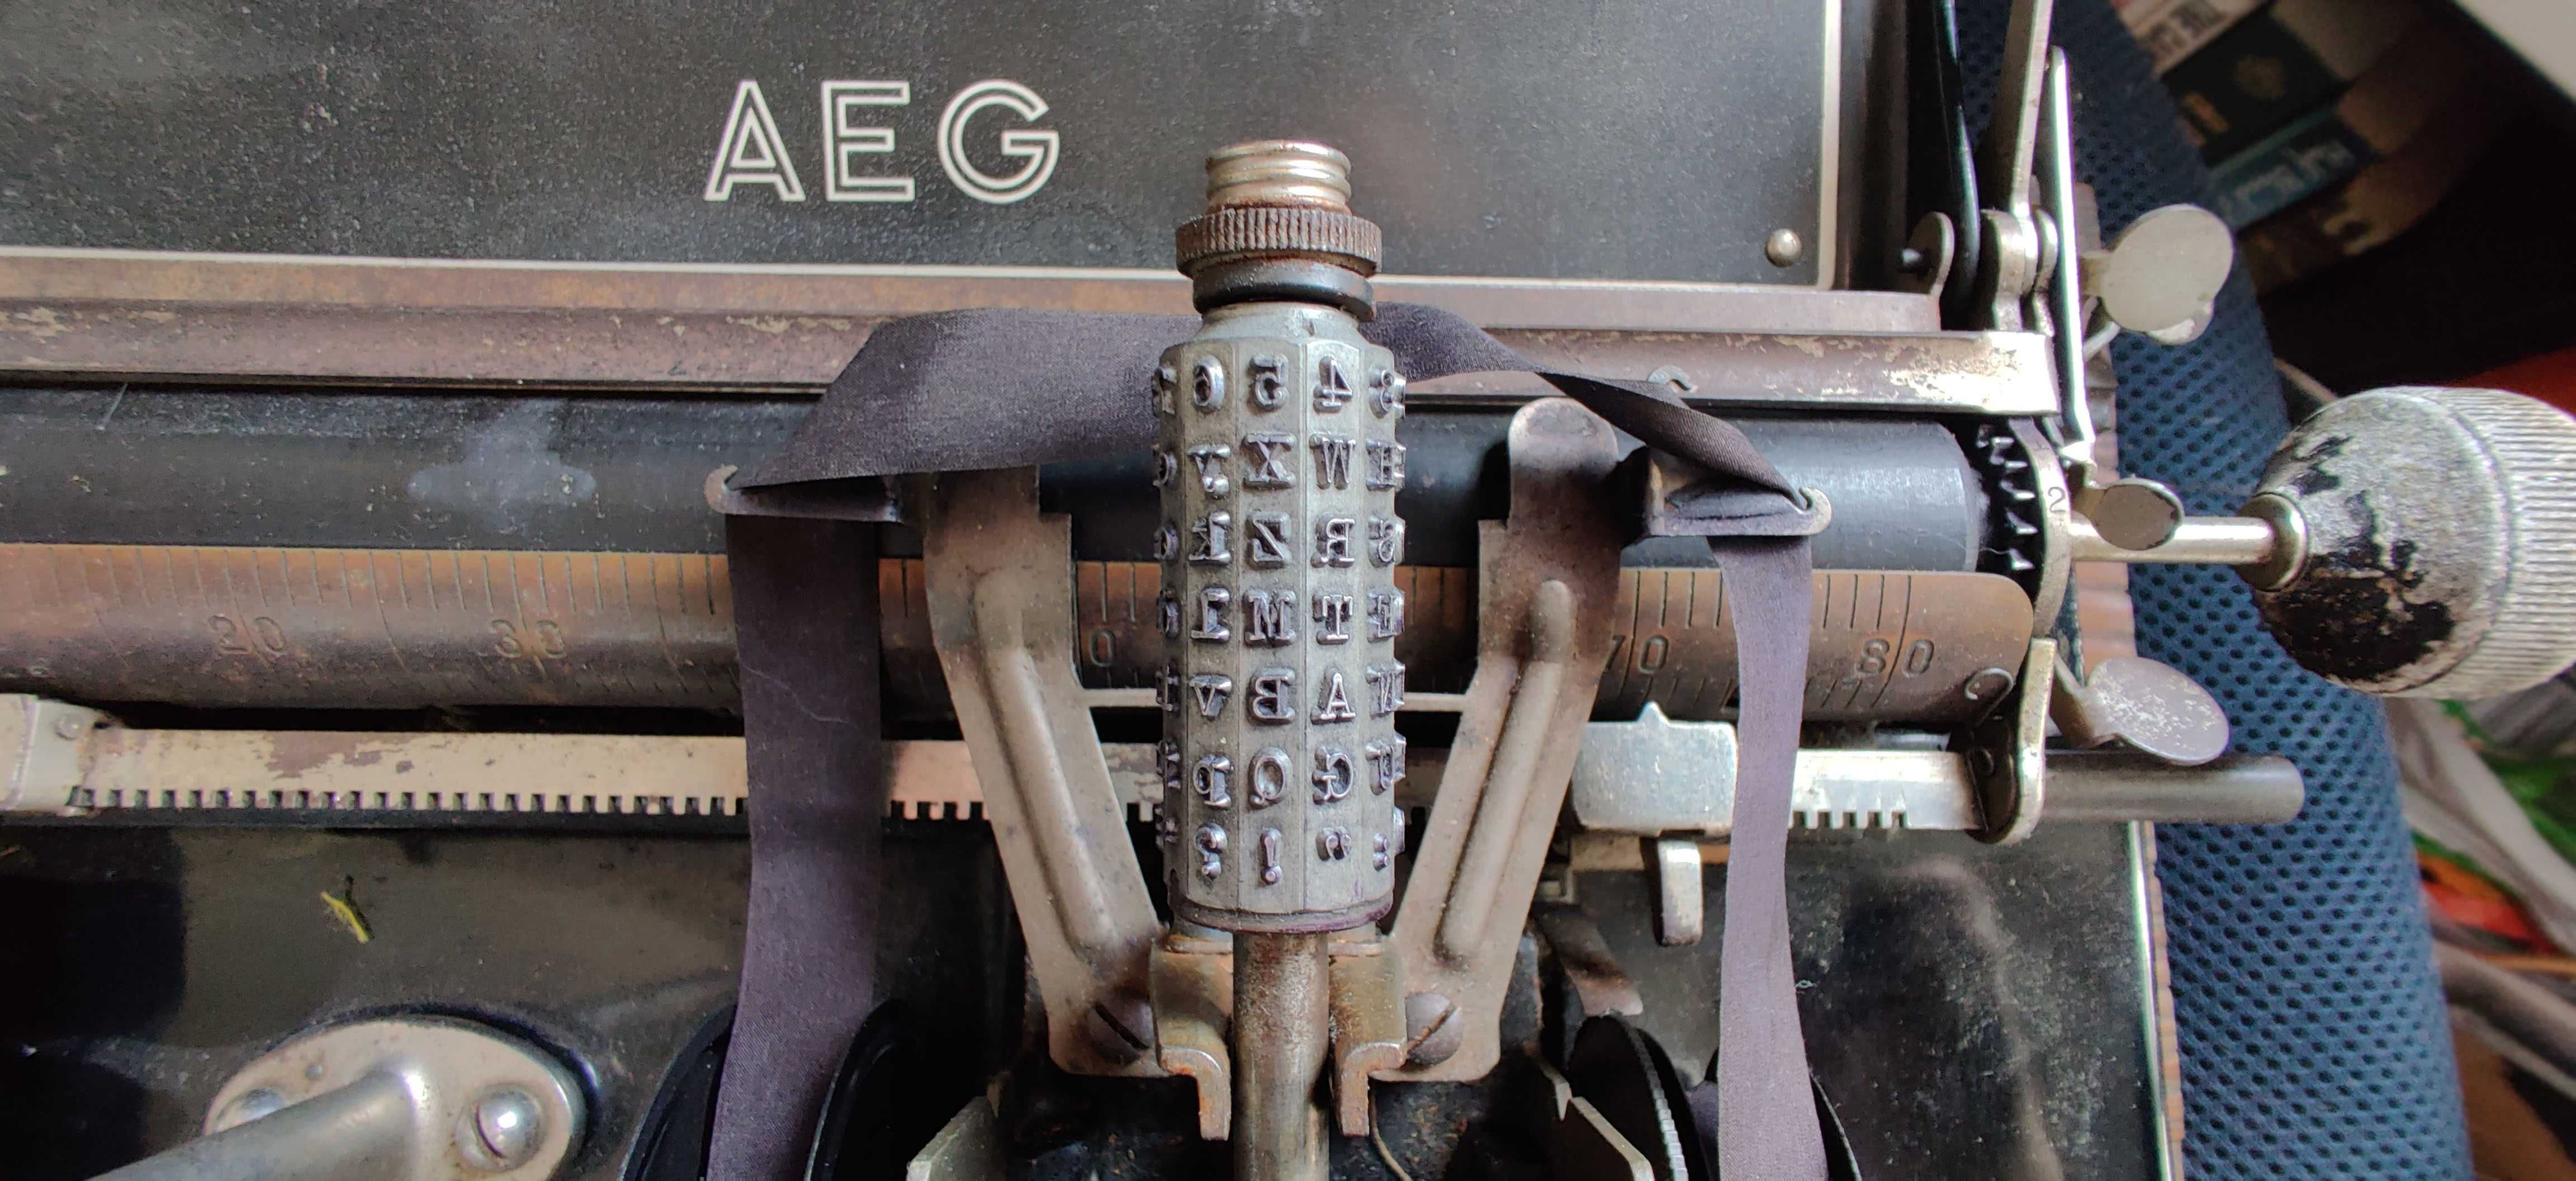 Máquina de Escrever Mignon AEG - Antiga 100 anos - Com caixa original